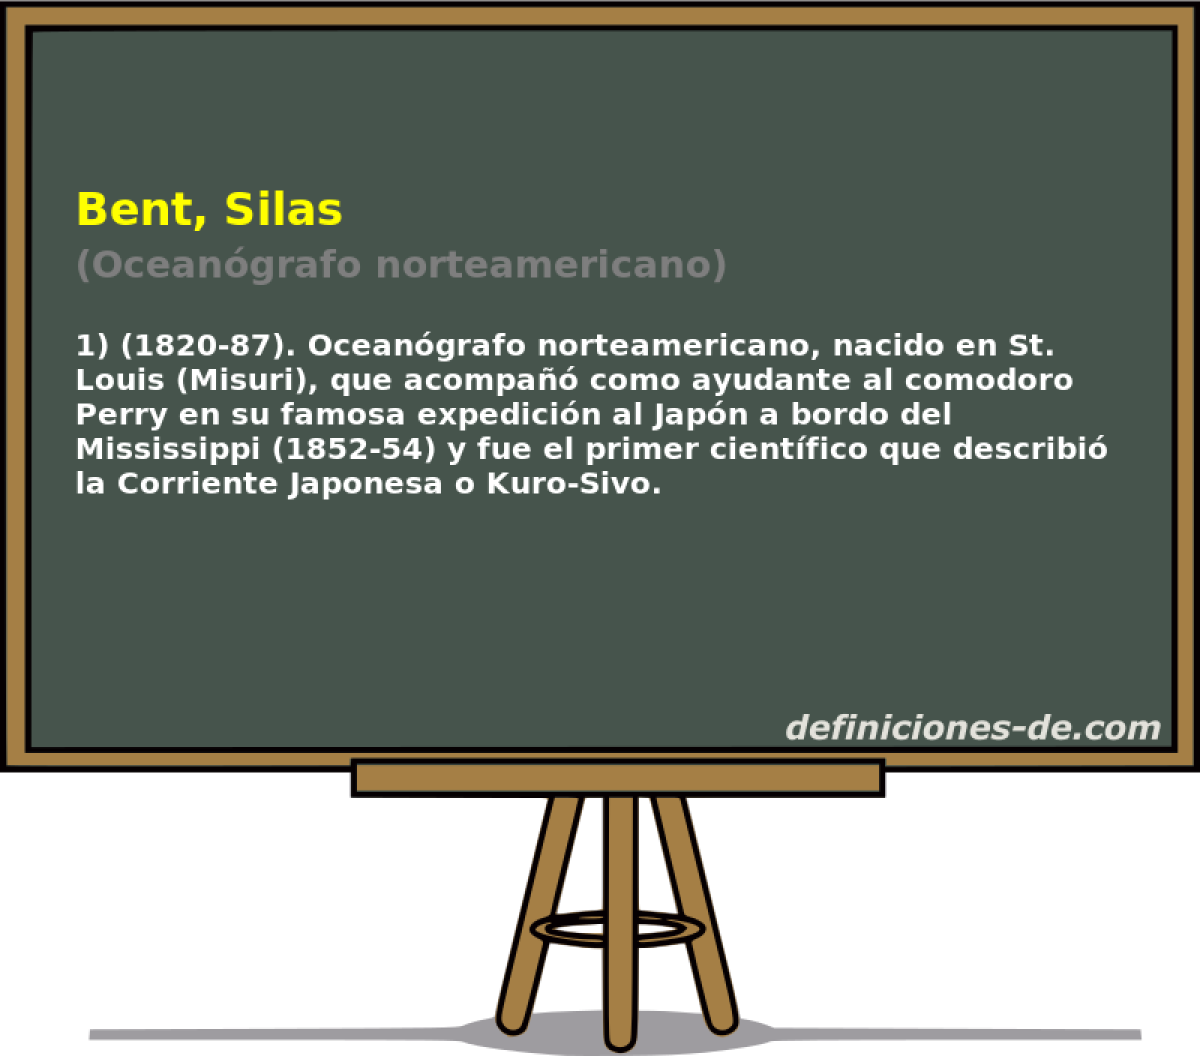 Bent, Silas (Oceangrafo norteamericano)